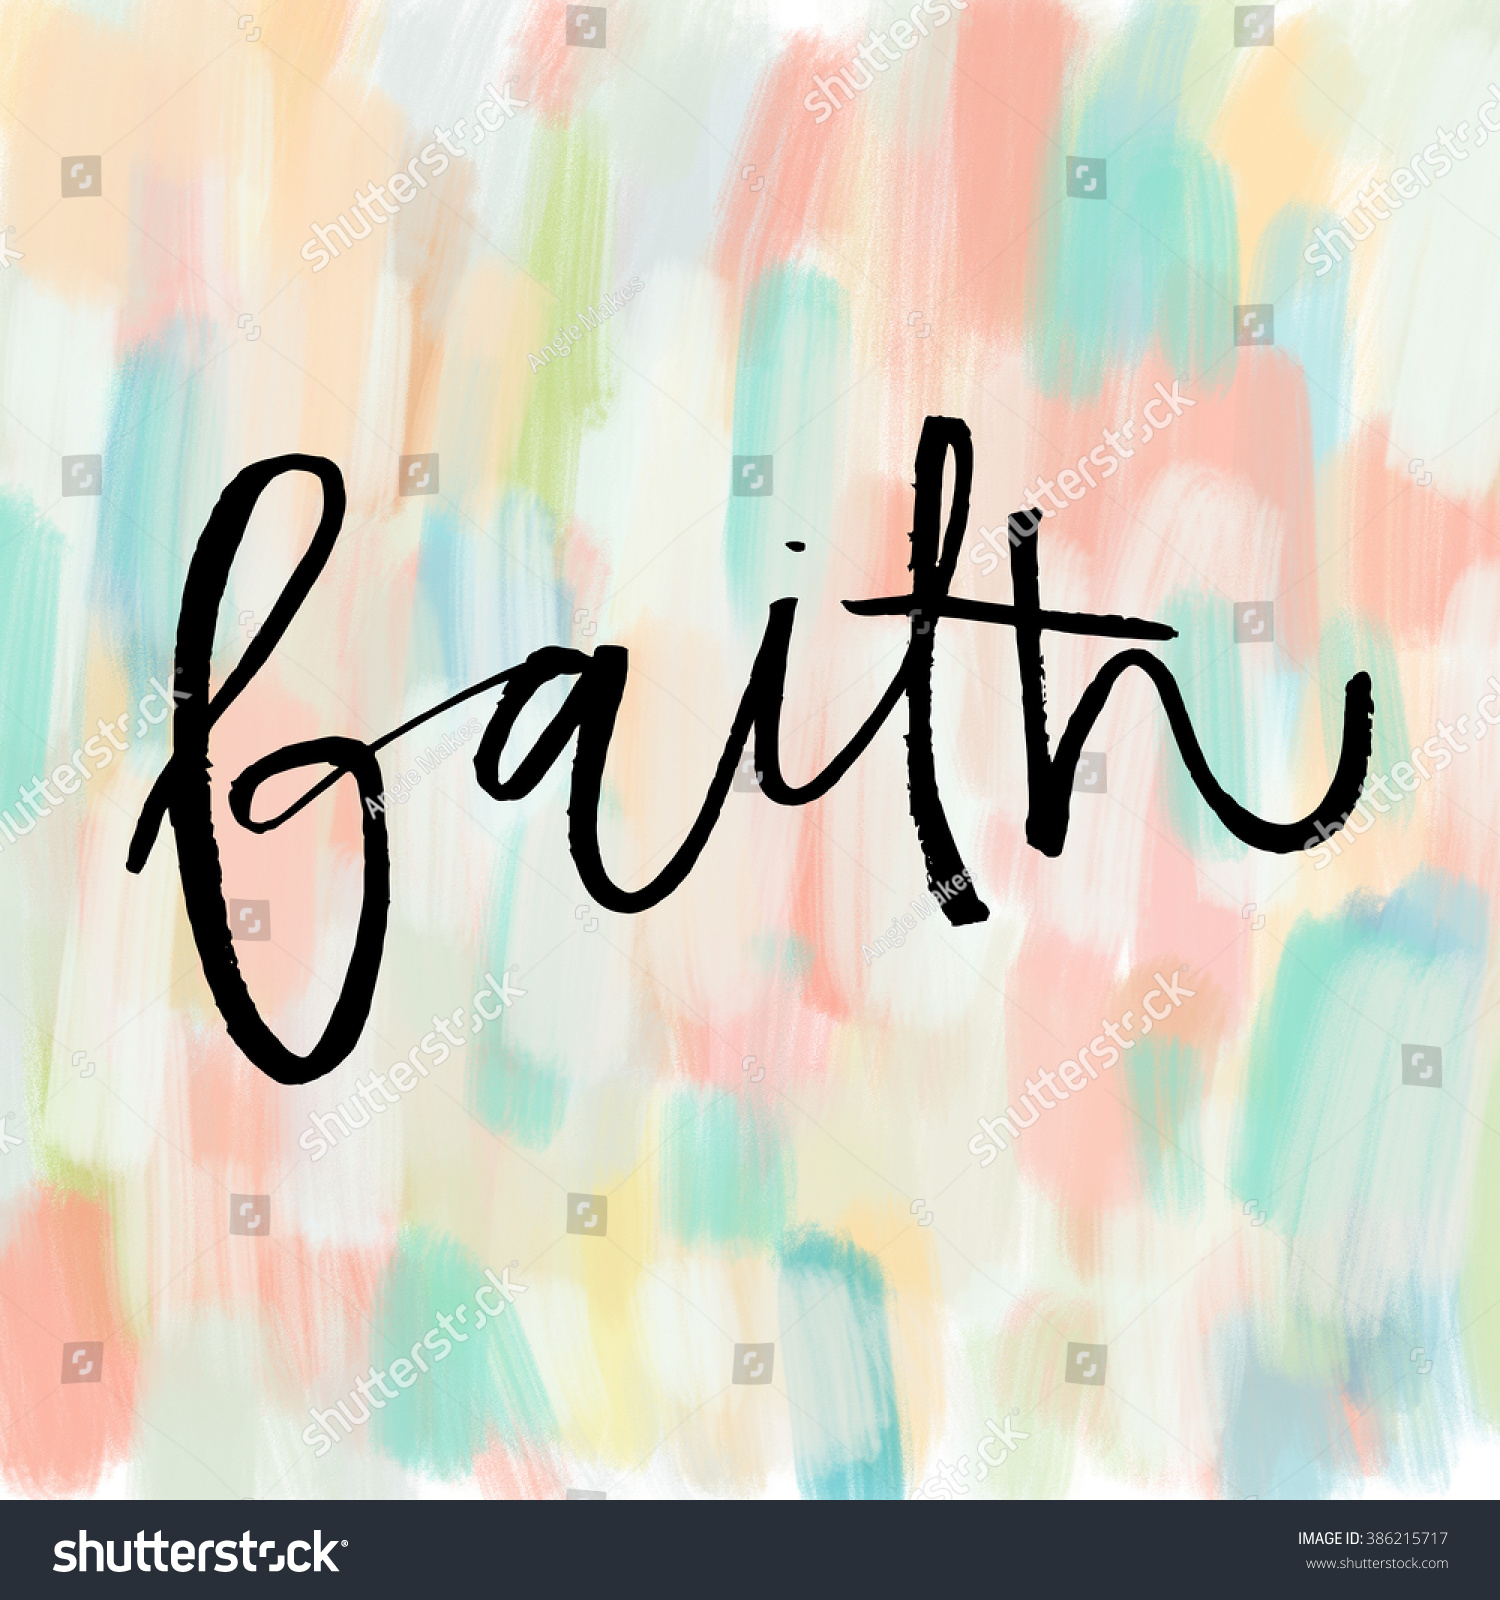 clipart of the word faith - photo #46